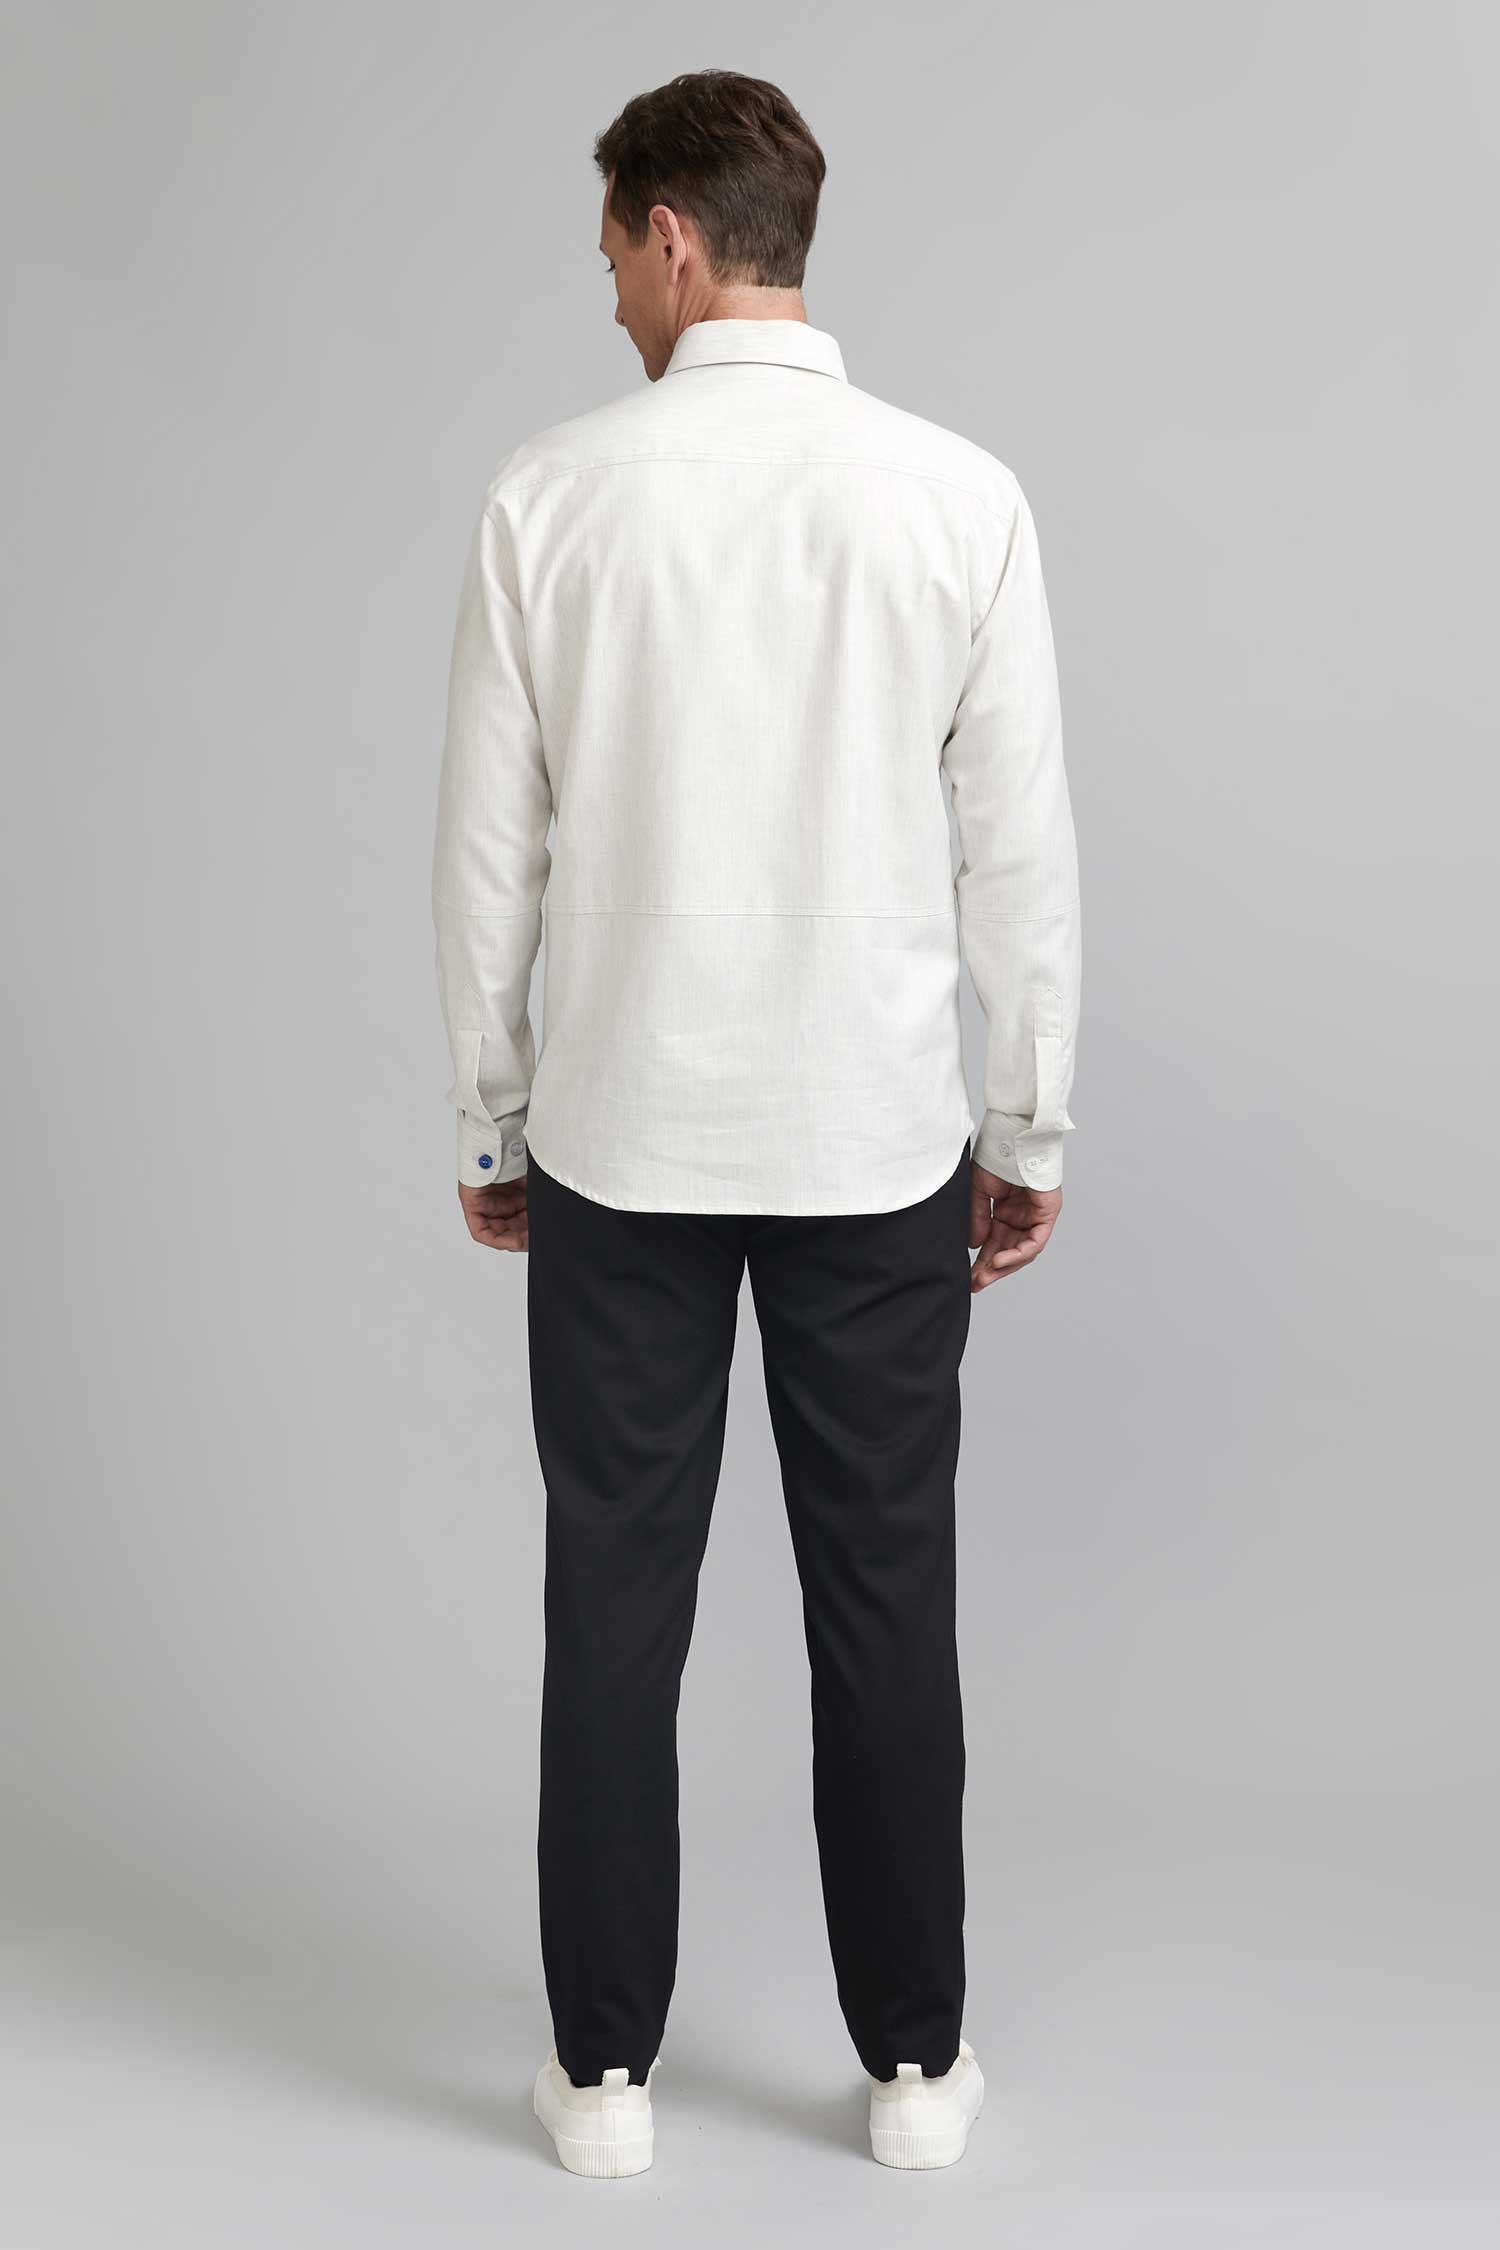 FRENN Alvar cotton shirt grey